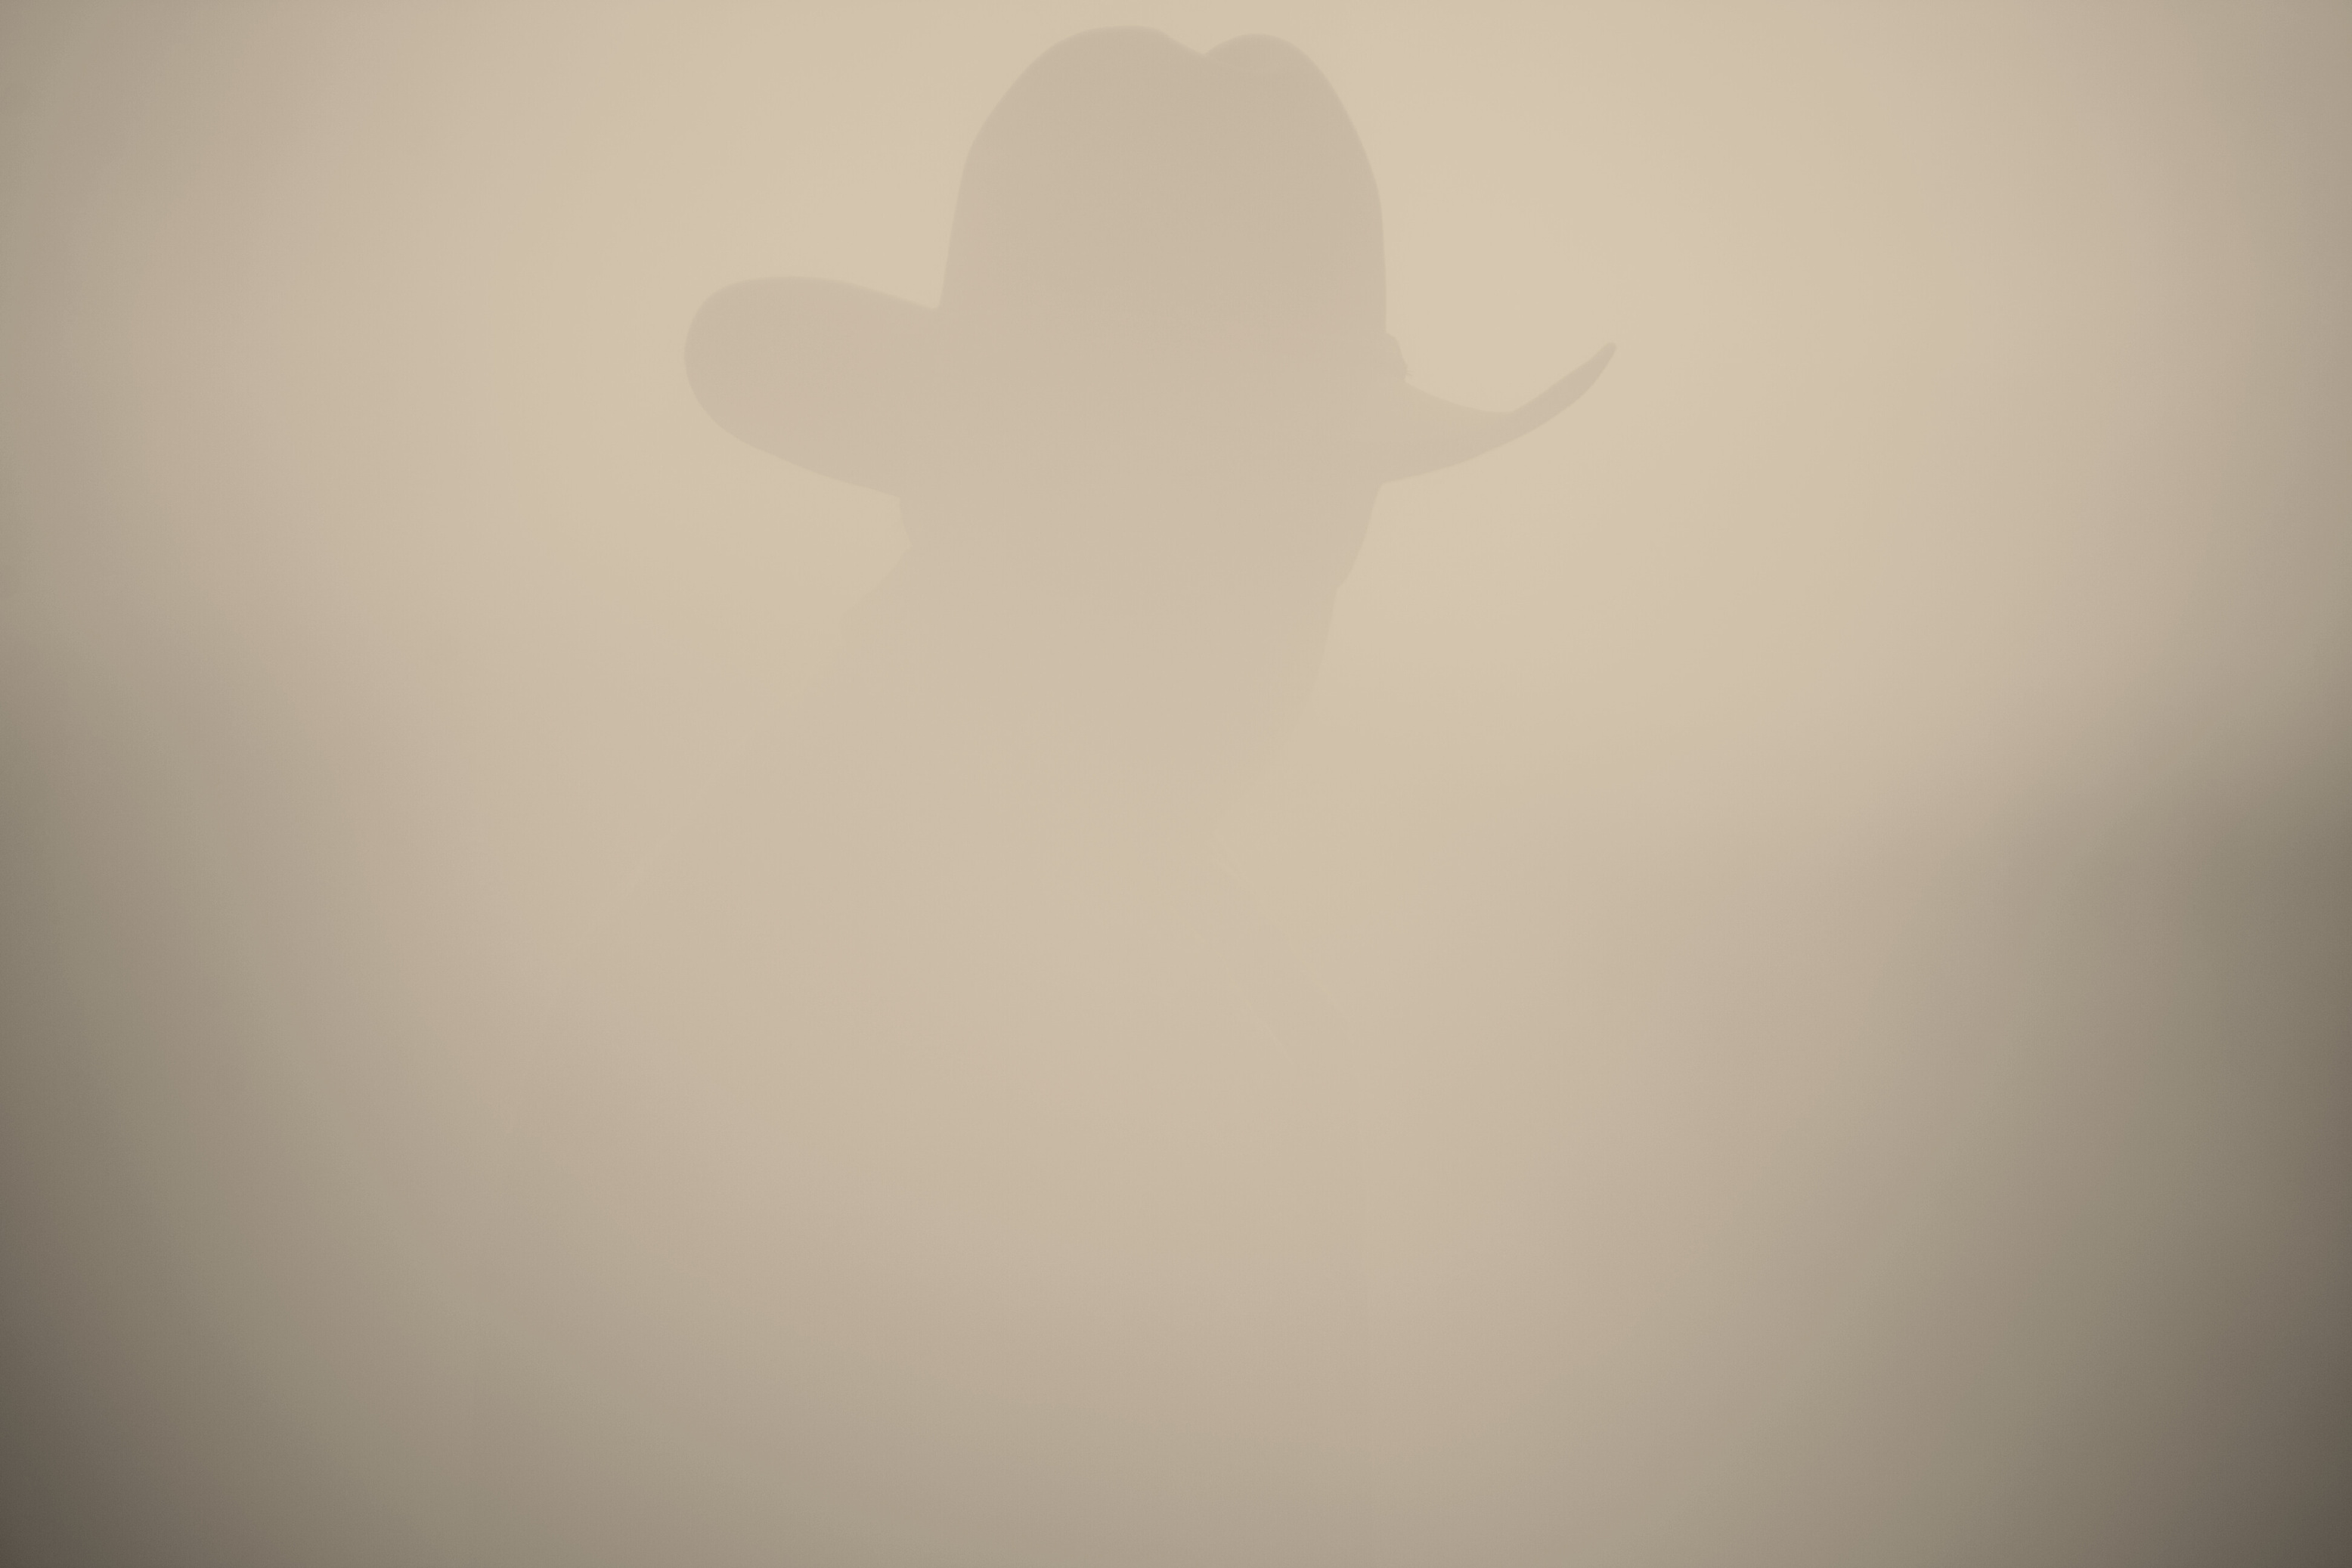 dusty cowboy